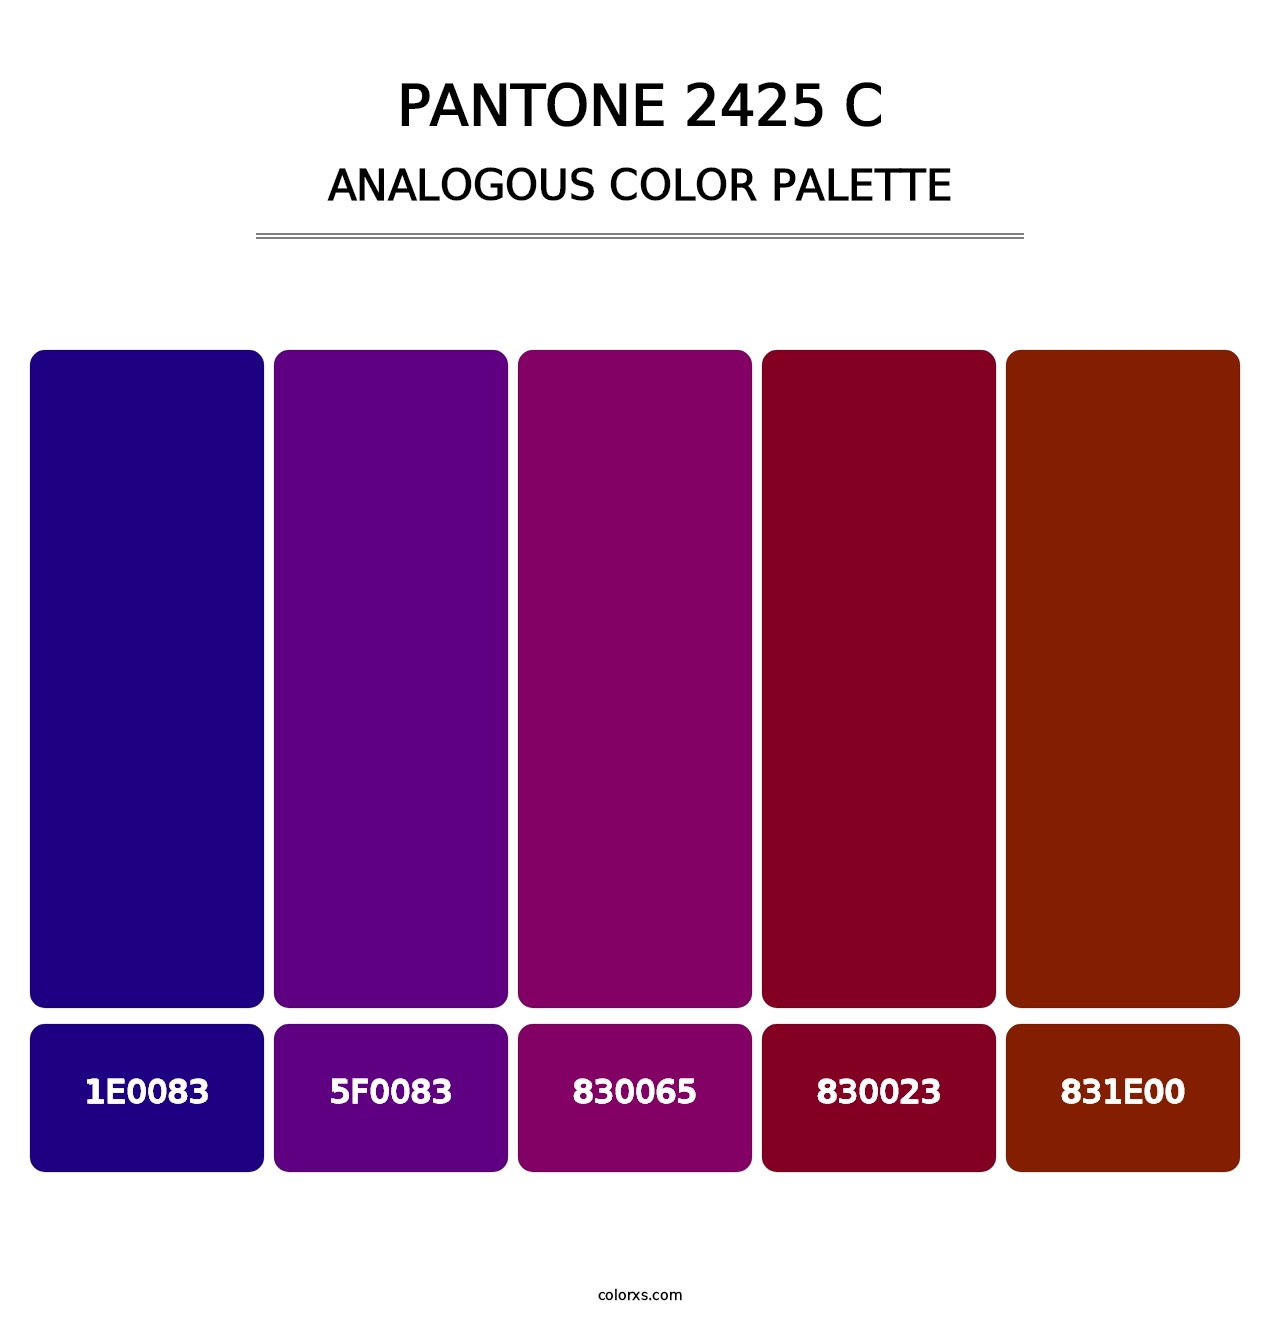 PANTONE 2425 C - Analogous Color Palette